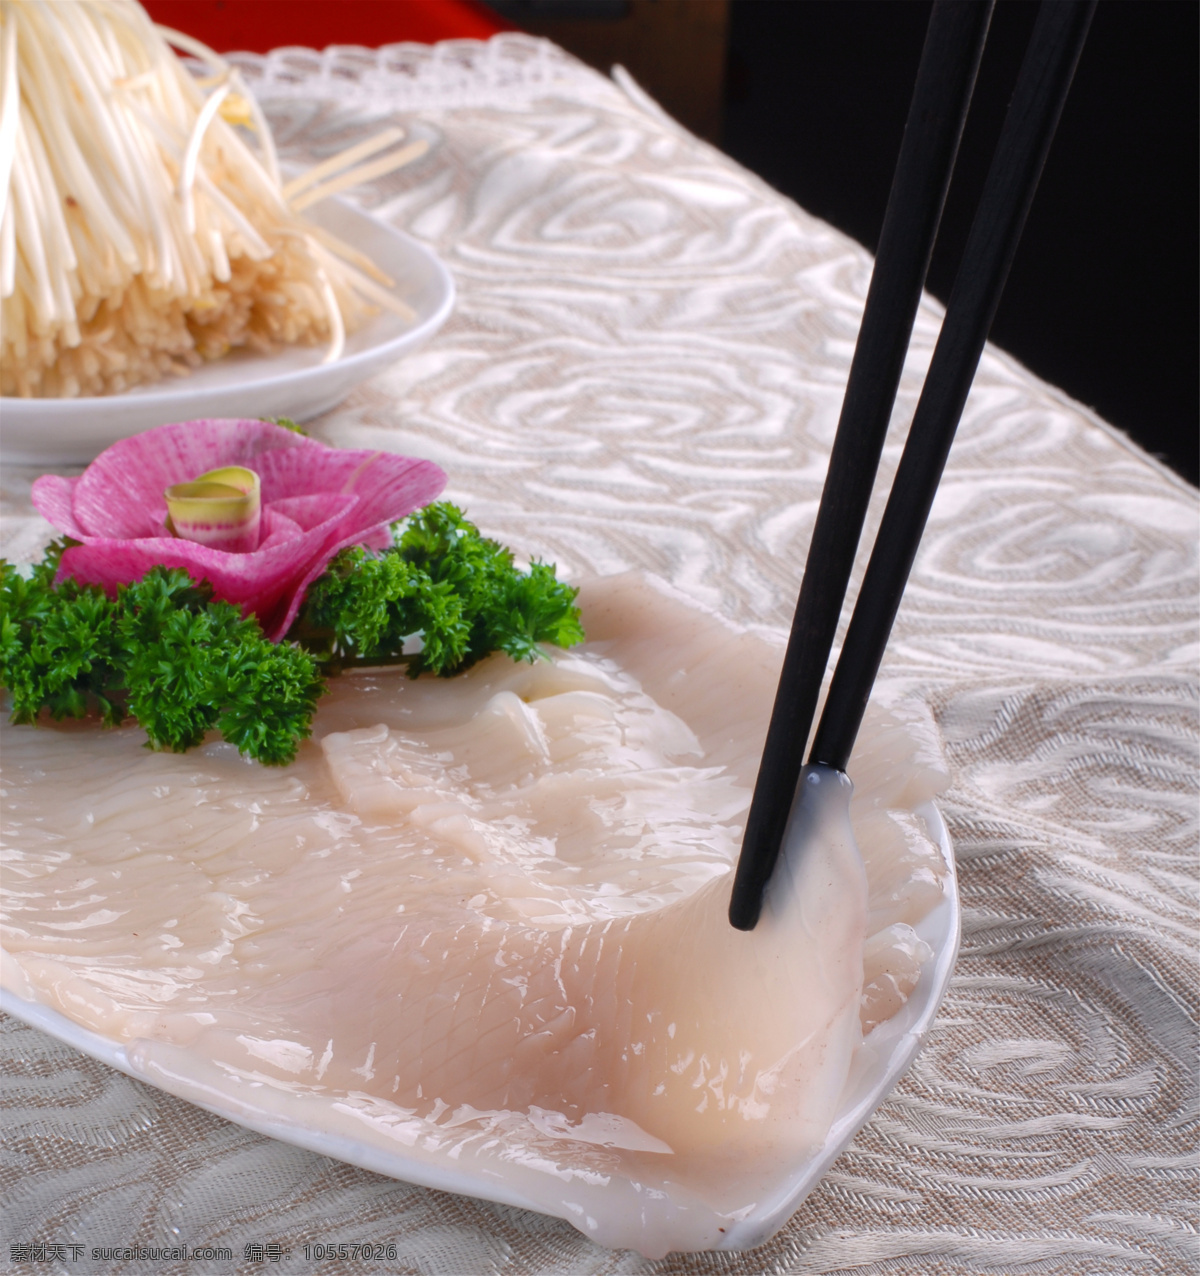 荤菜鲜鱿鱼 美食 传统美食 餐饮美食 高清菜谱用图